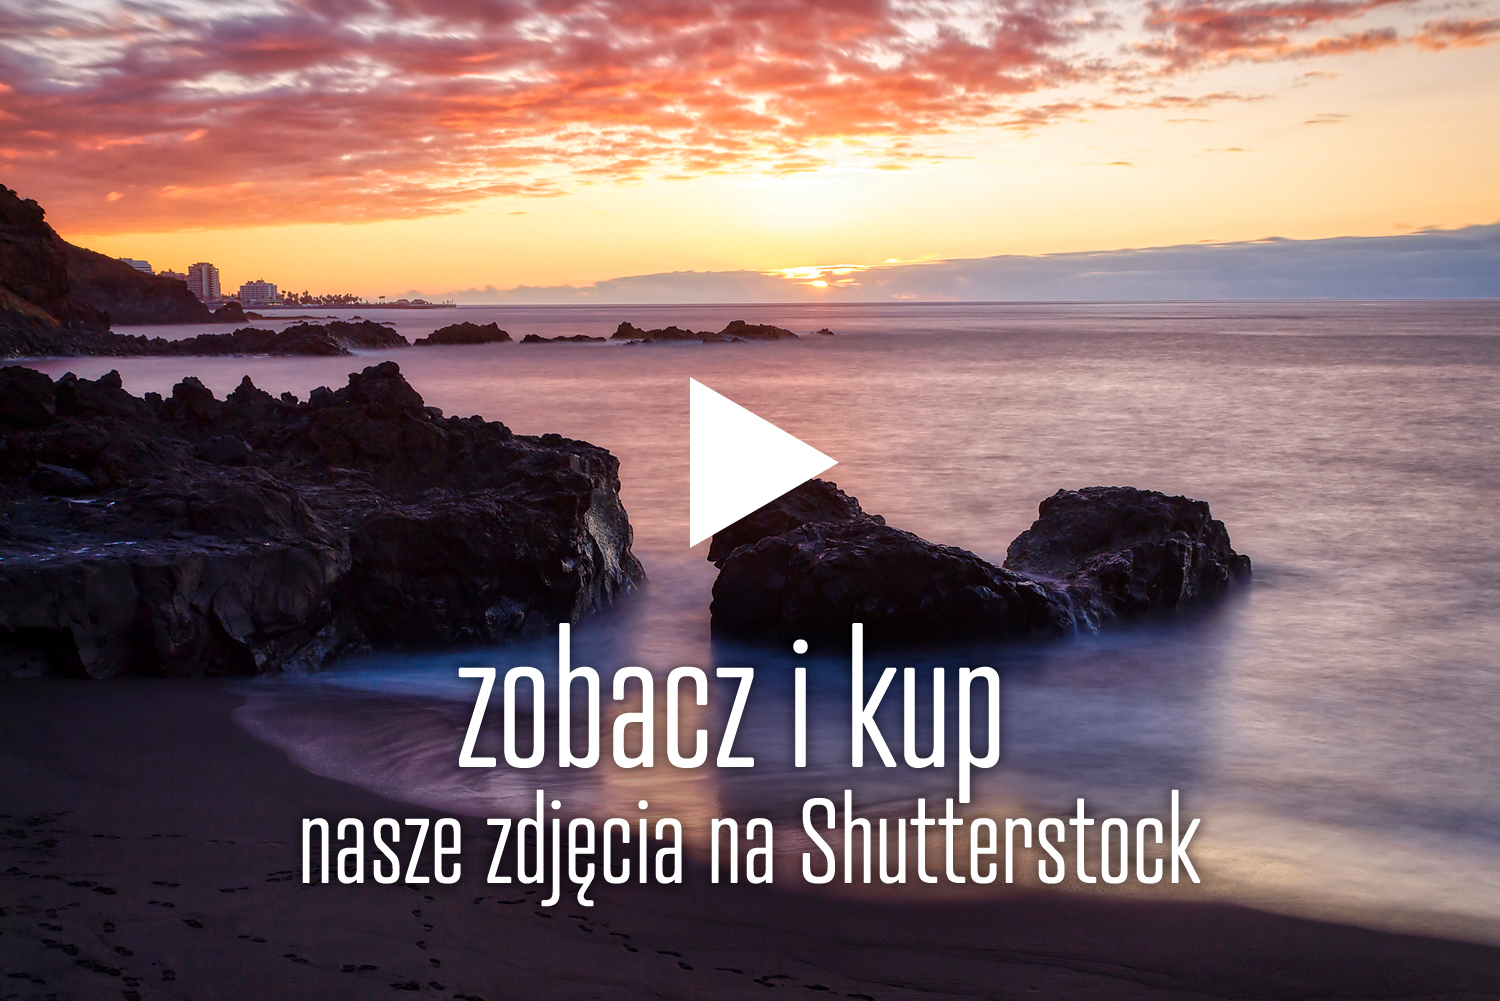 zdjÄ™cia Shutterstock